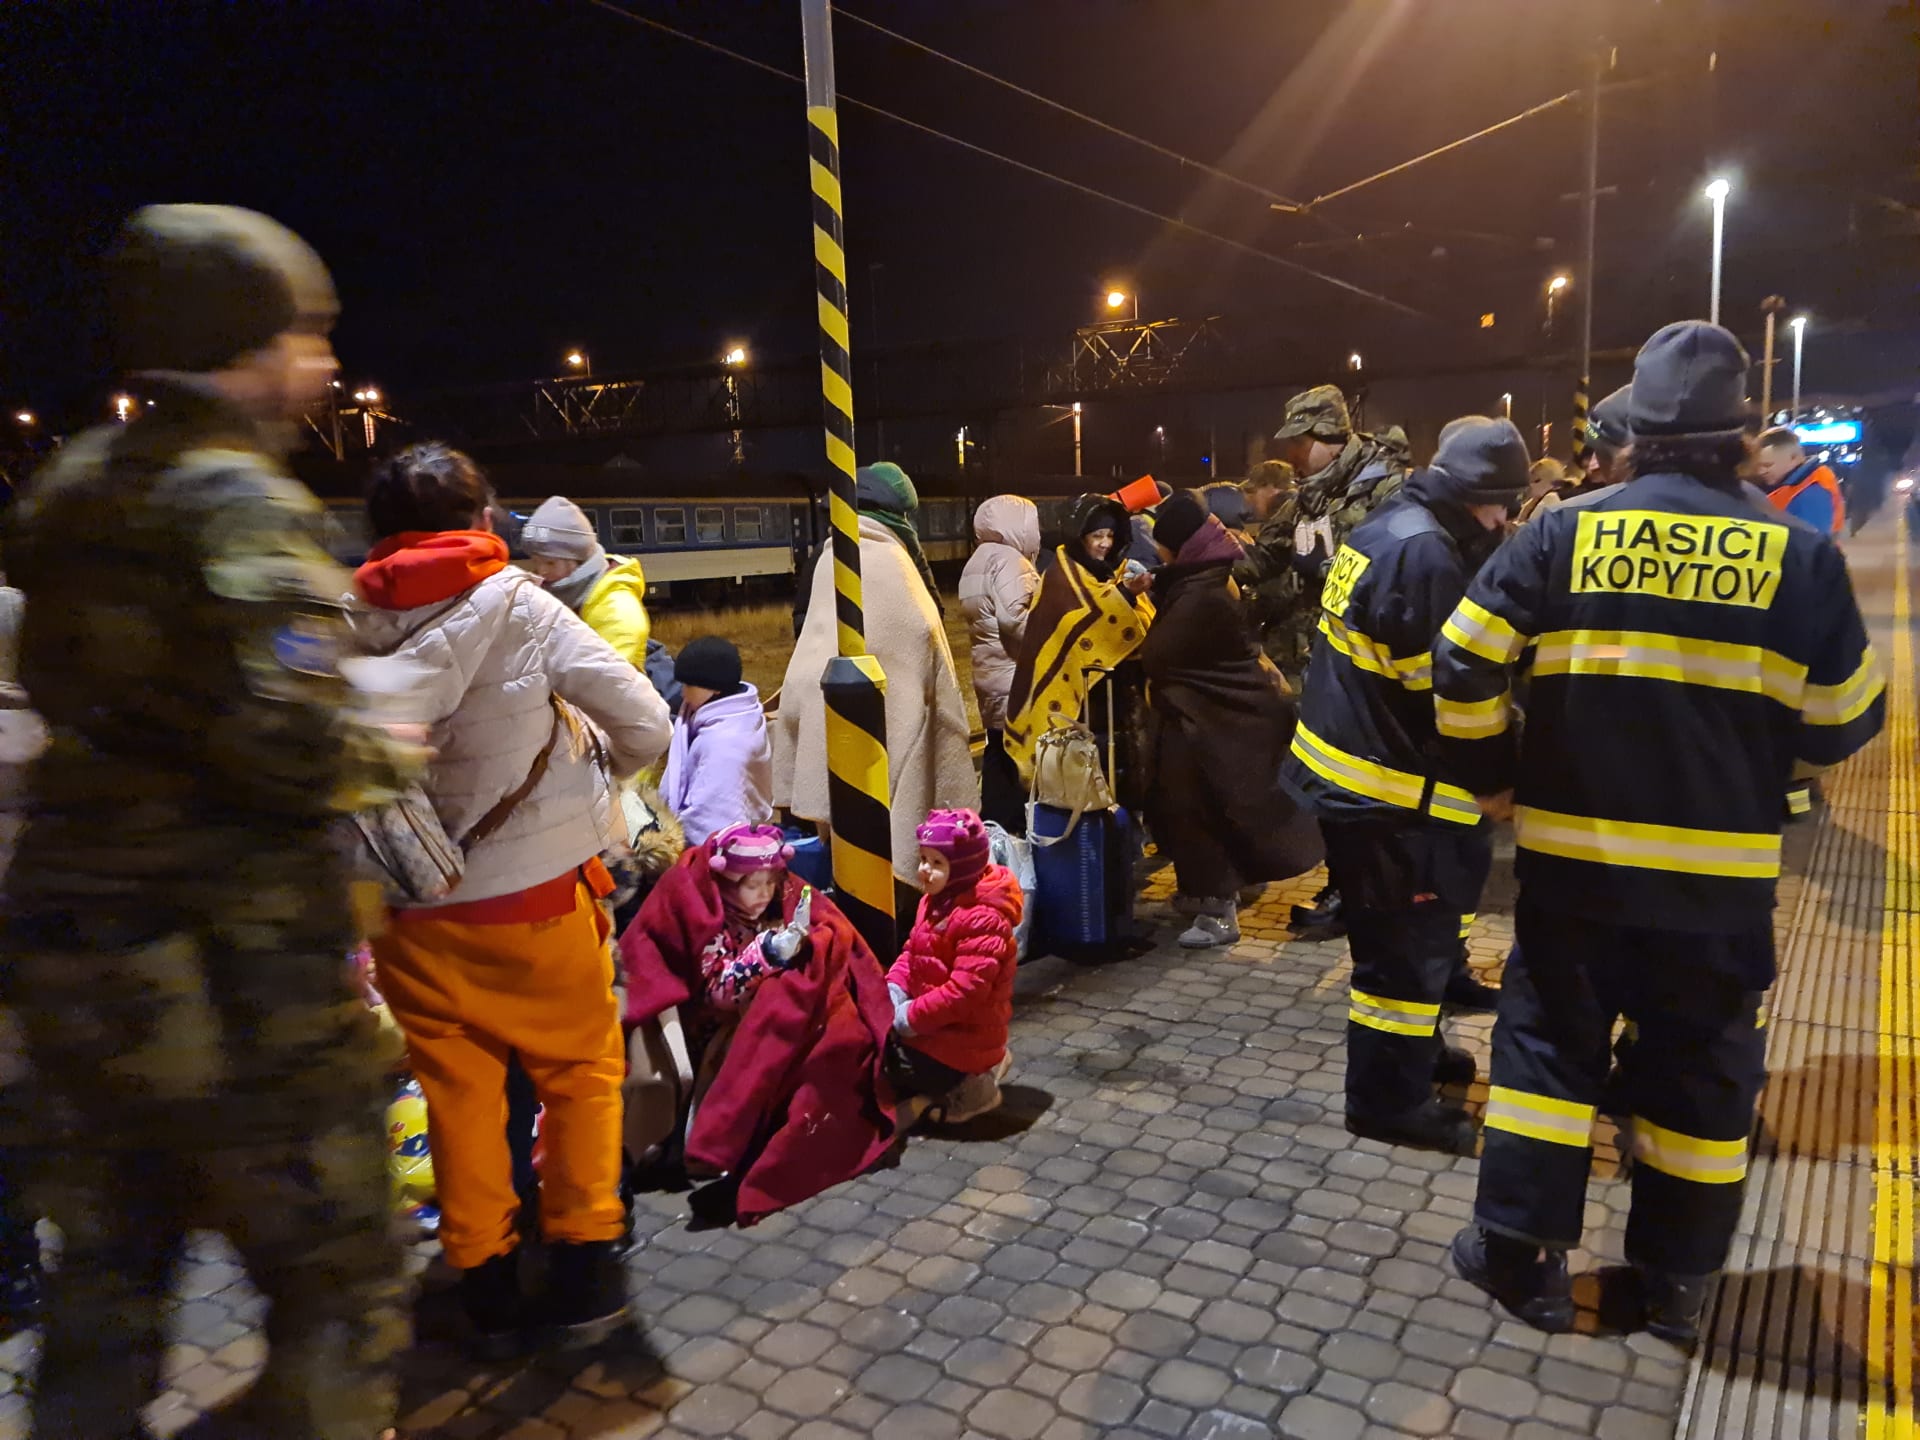 Hasiči z Kopytova u Bohumína už měsíc pořádně nespali. Na nádraží v Bohumíně pečují v humanitárním stanu o ukrajinské uprchlíky.